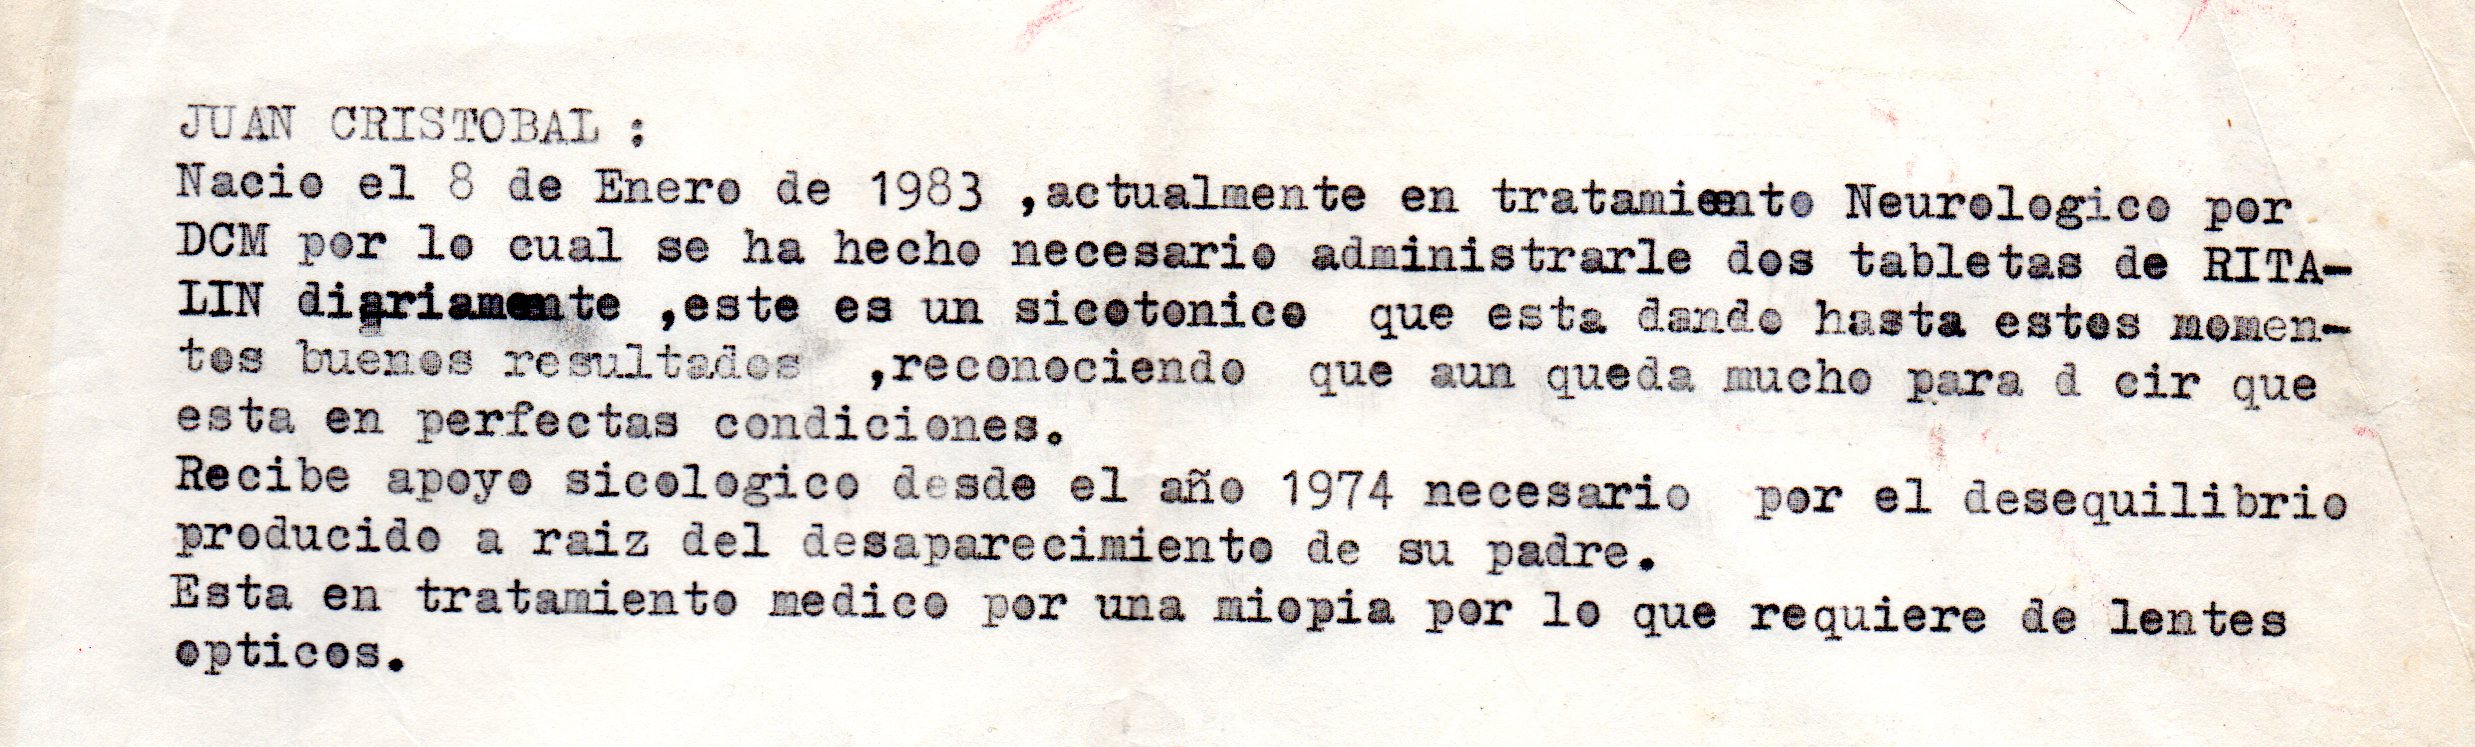 Certificado médico de Juan Cristóbal Salcedo